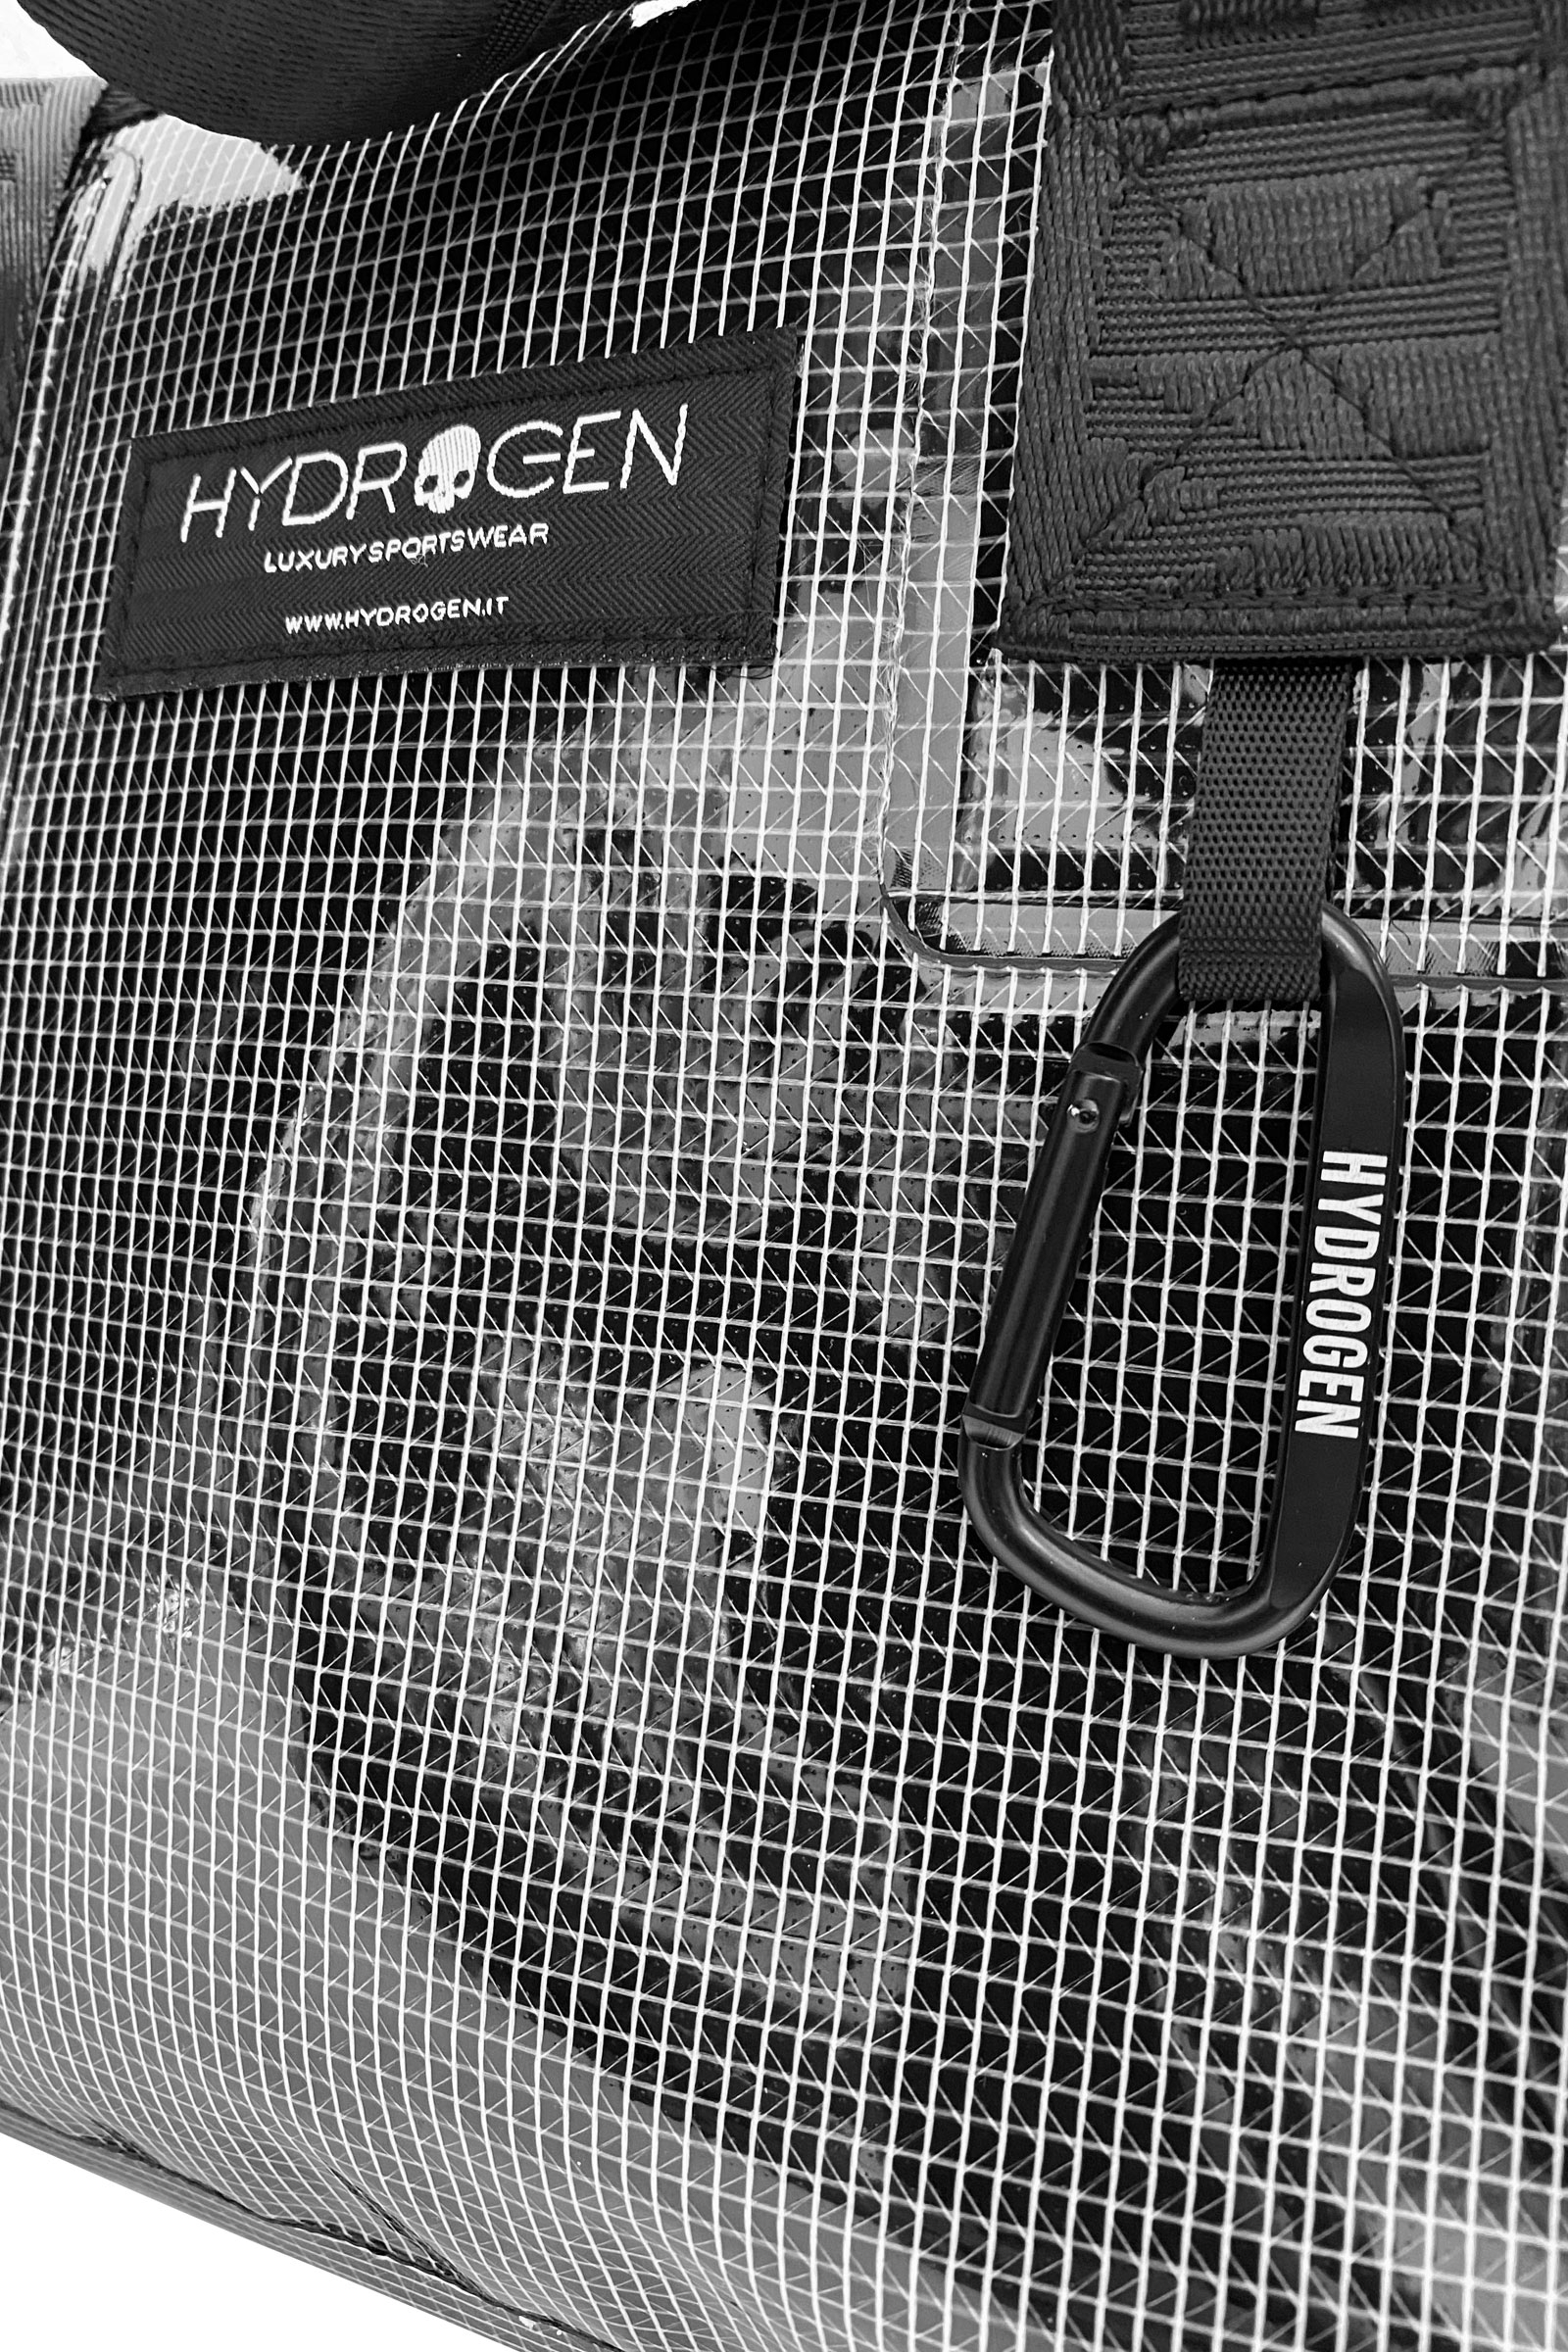 SHOPPING BAG - Outlet Hydrogen - Abbigliamento sportivo